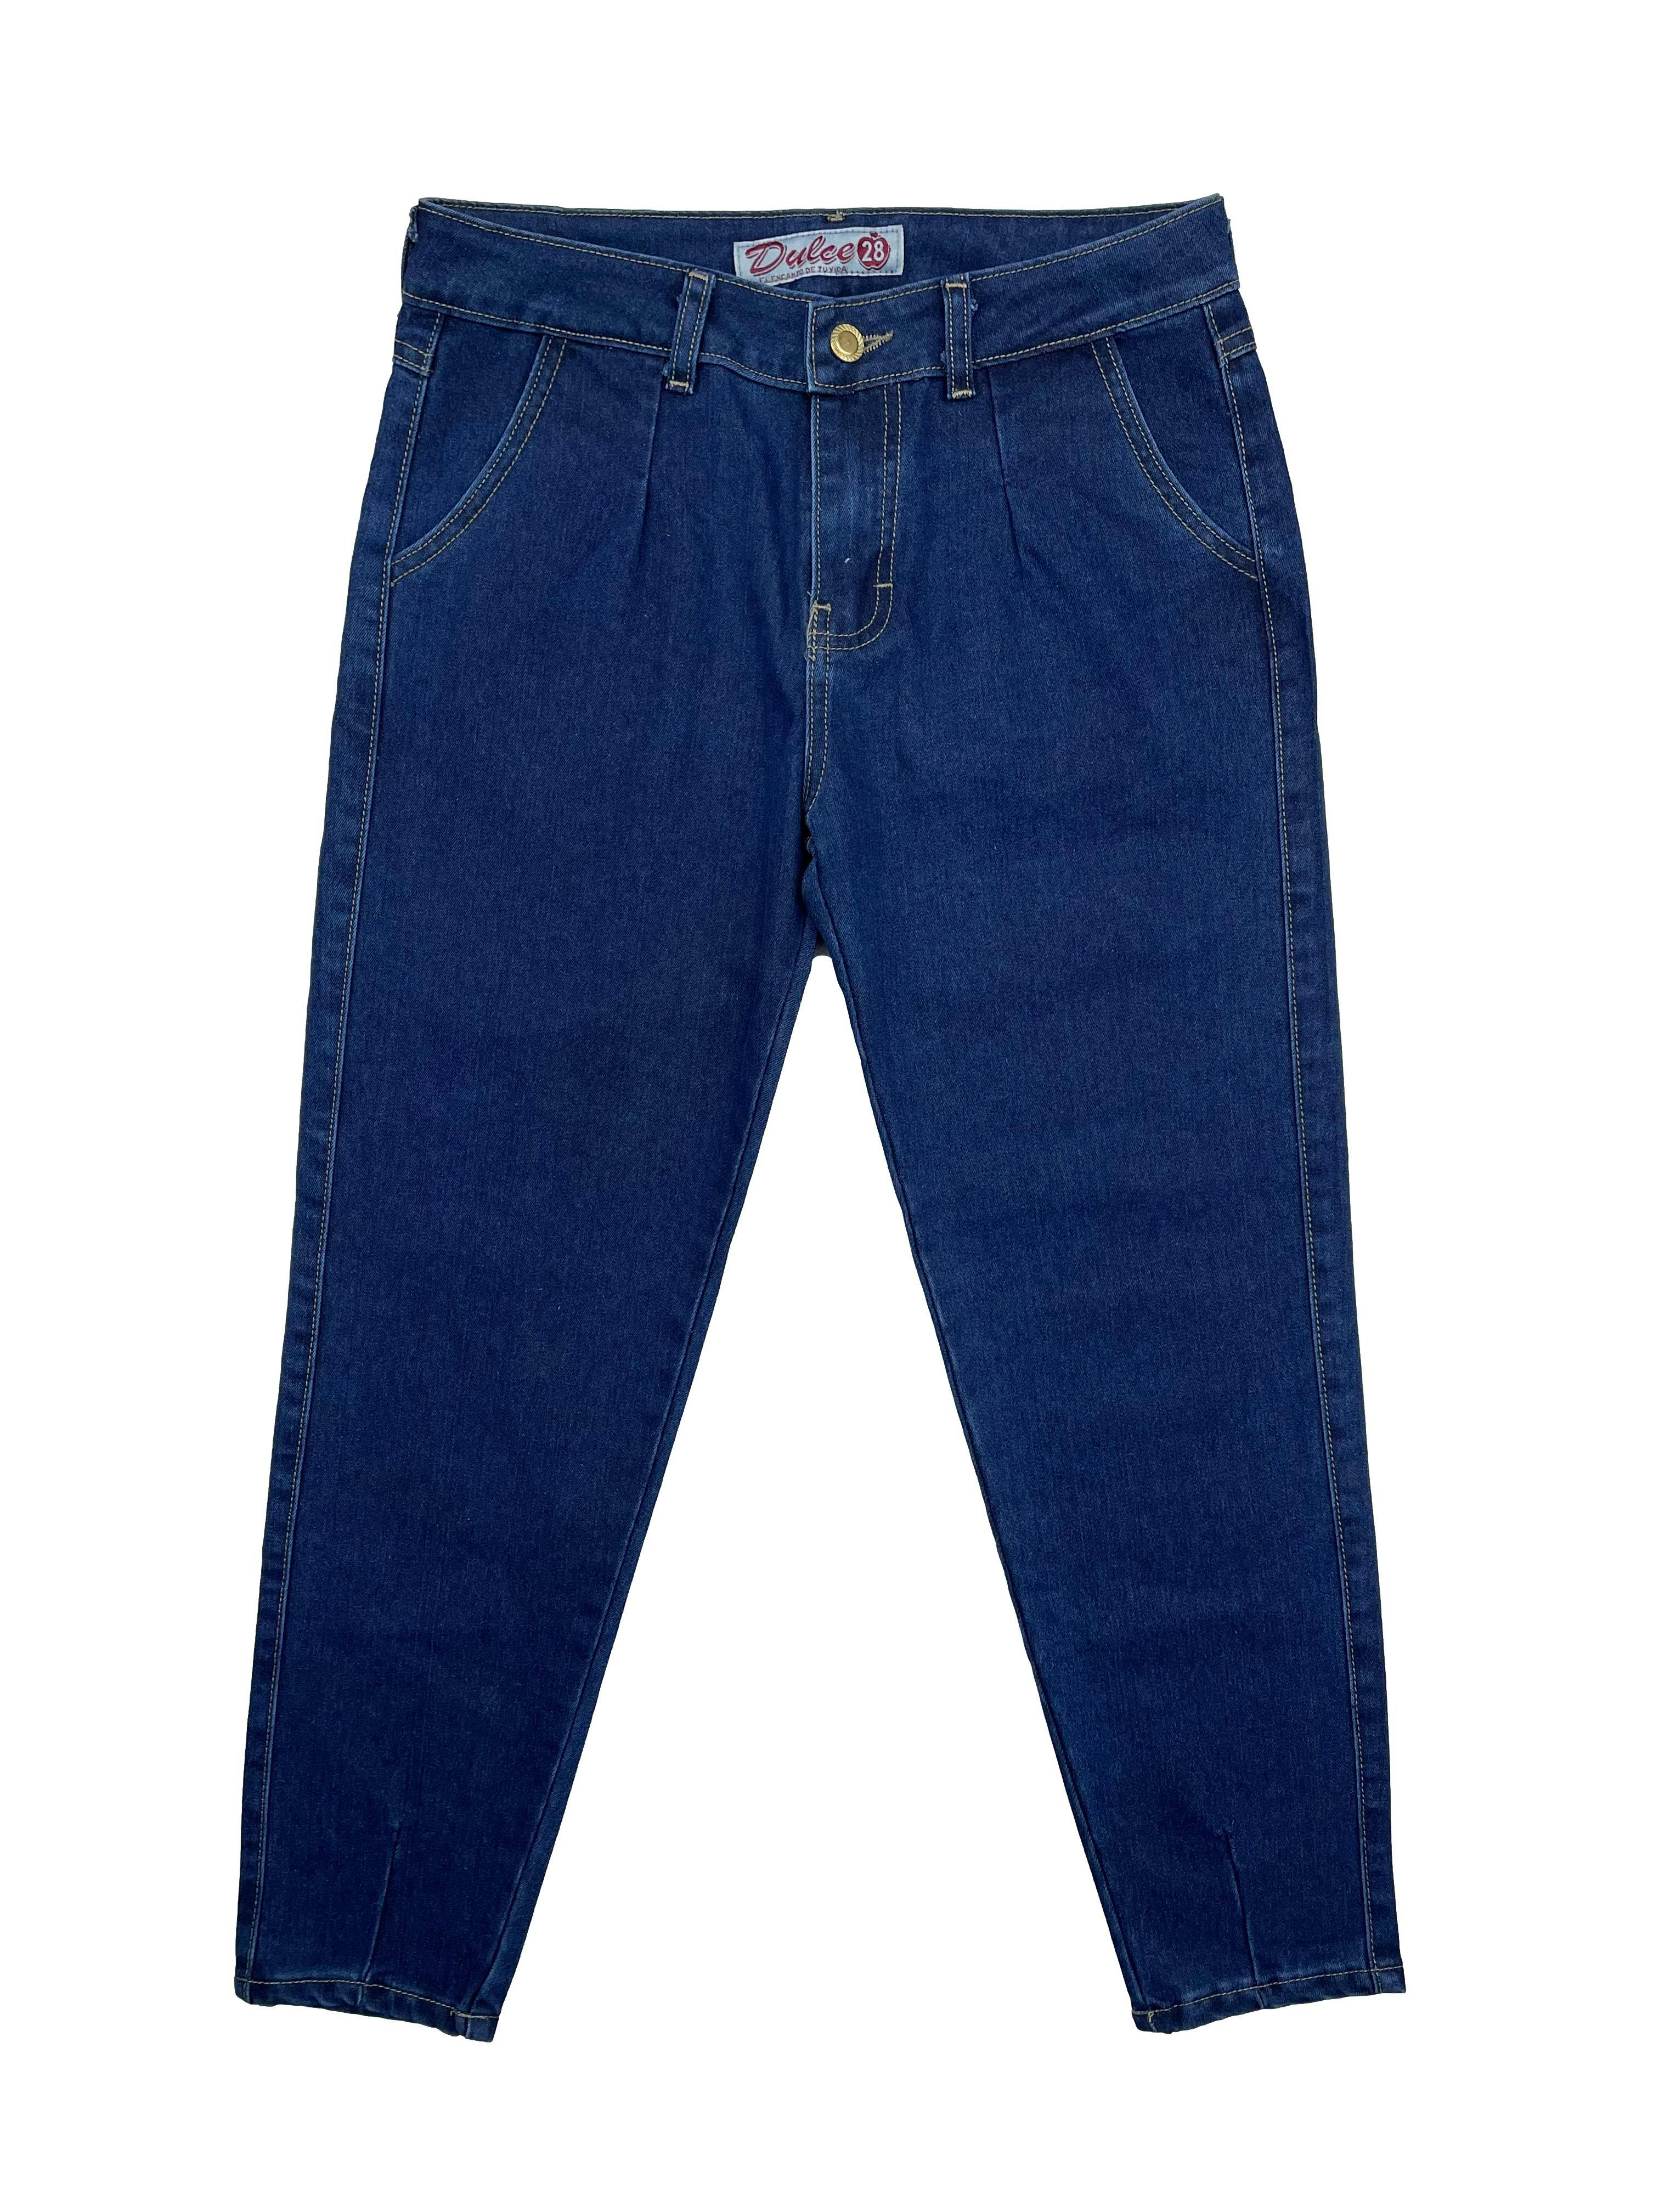 Jean azul con pinza delanteras, bolsillos adelante y atrás, con pinzas en la basta. Cintura: 72cm, Tiro: 25cm, Largo: 85cm